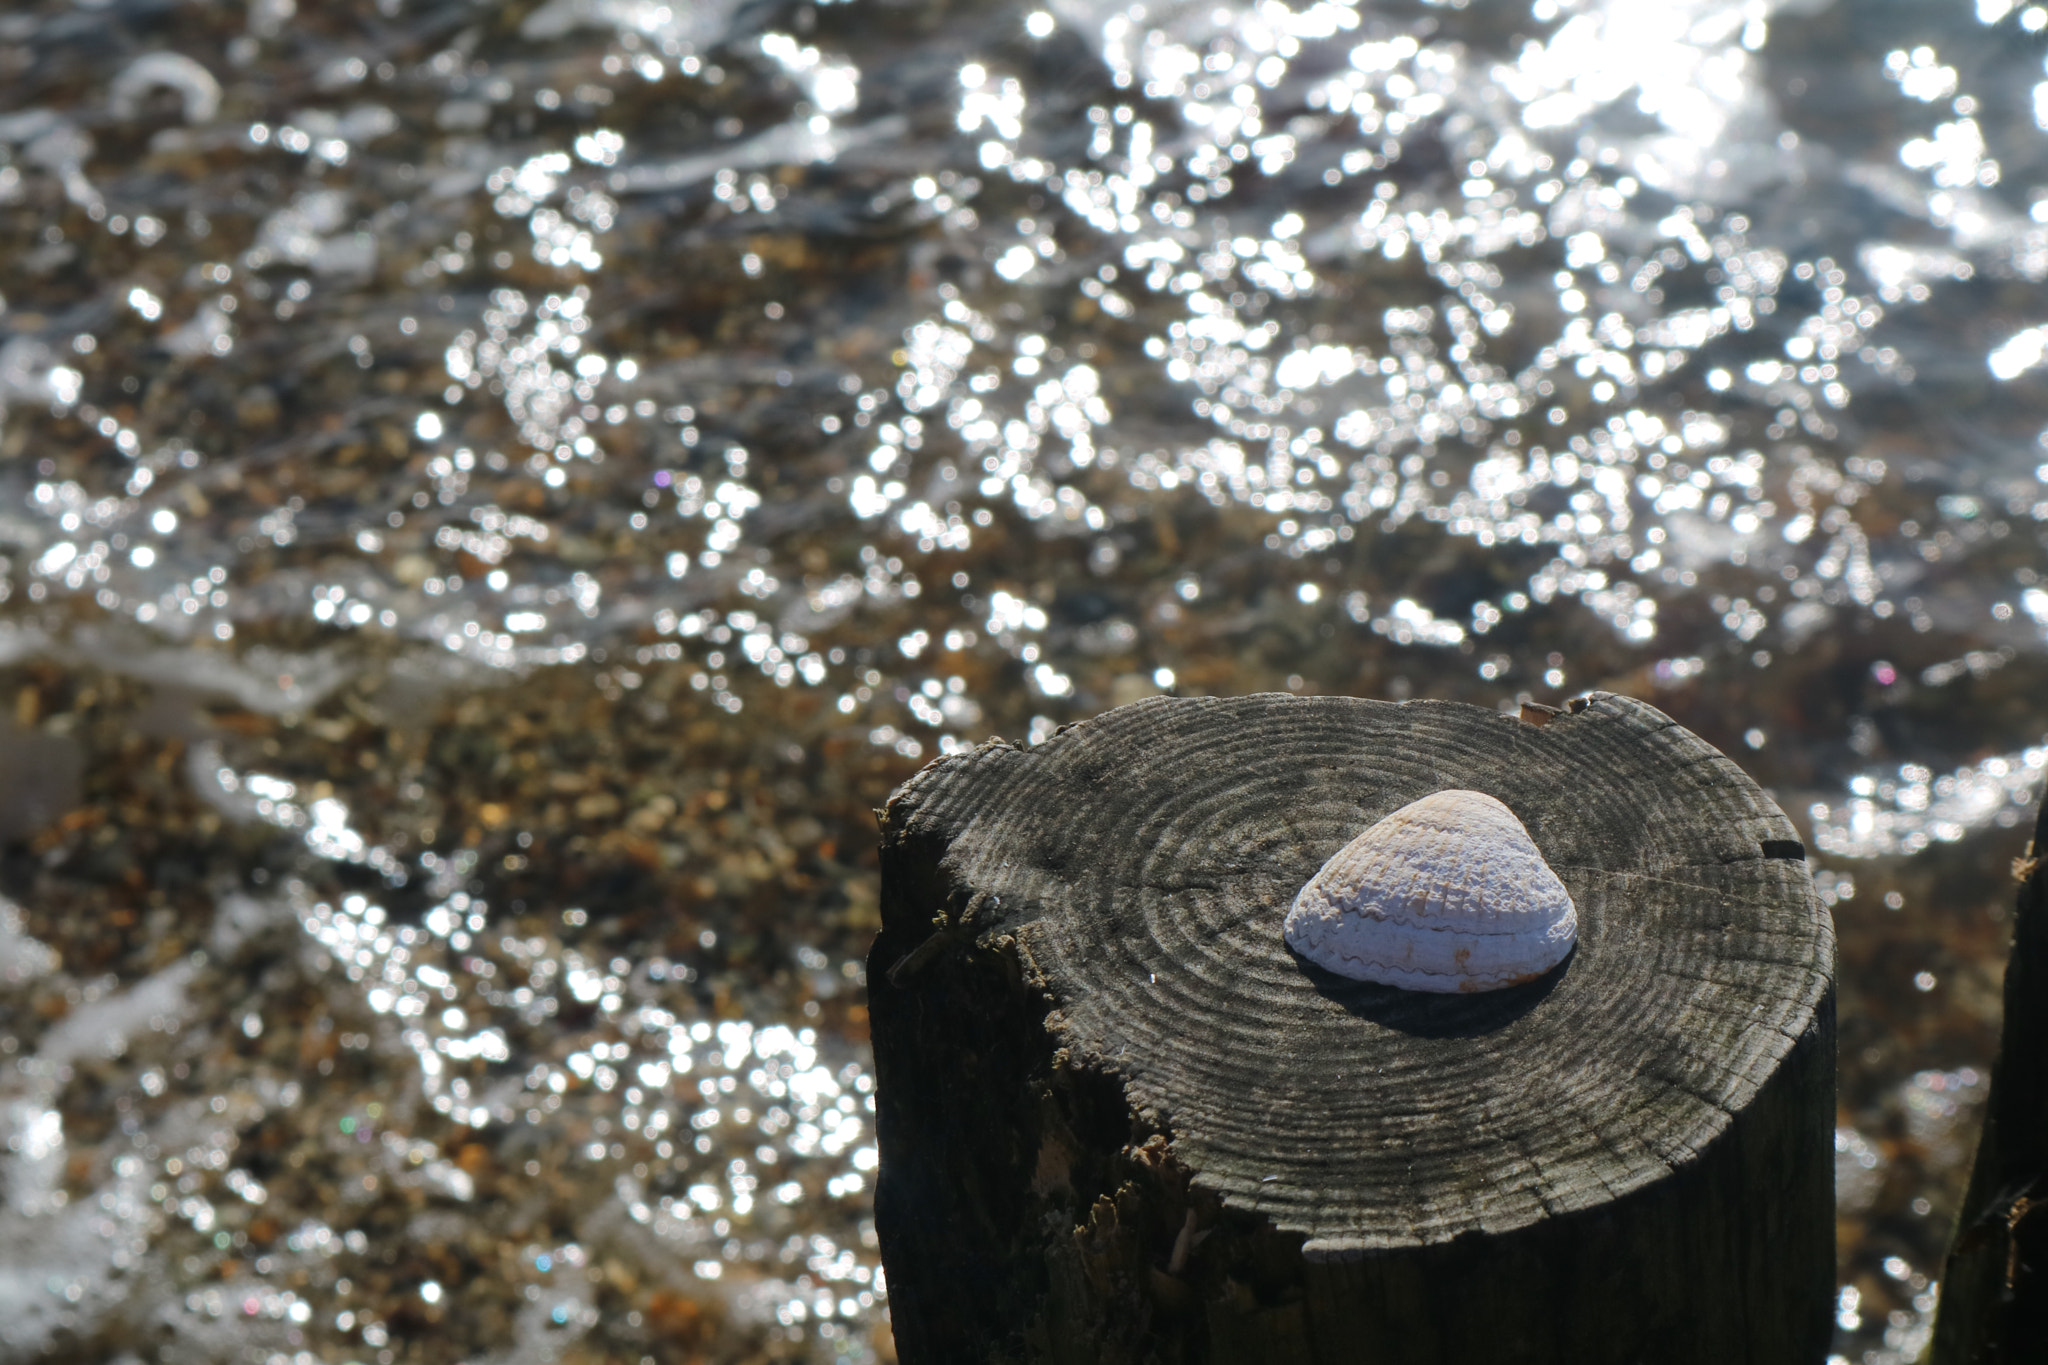 Canon EOS M3 sample photo. Shell on a sunny beach photography